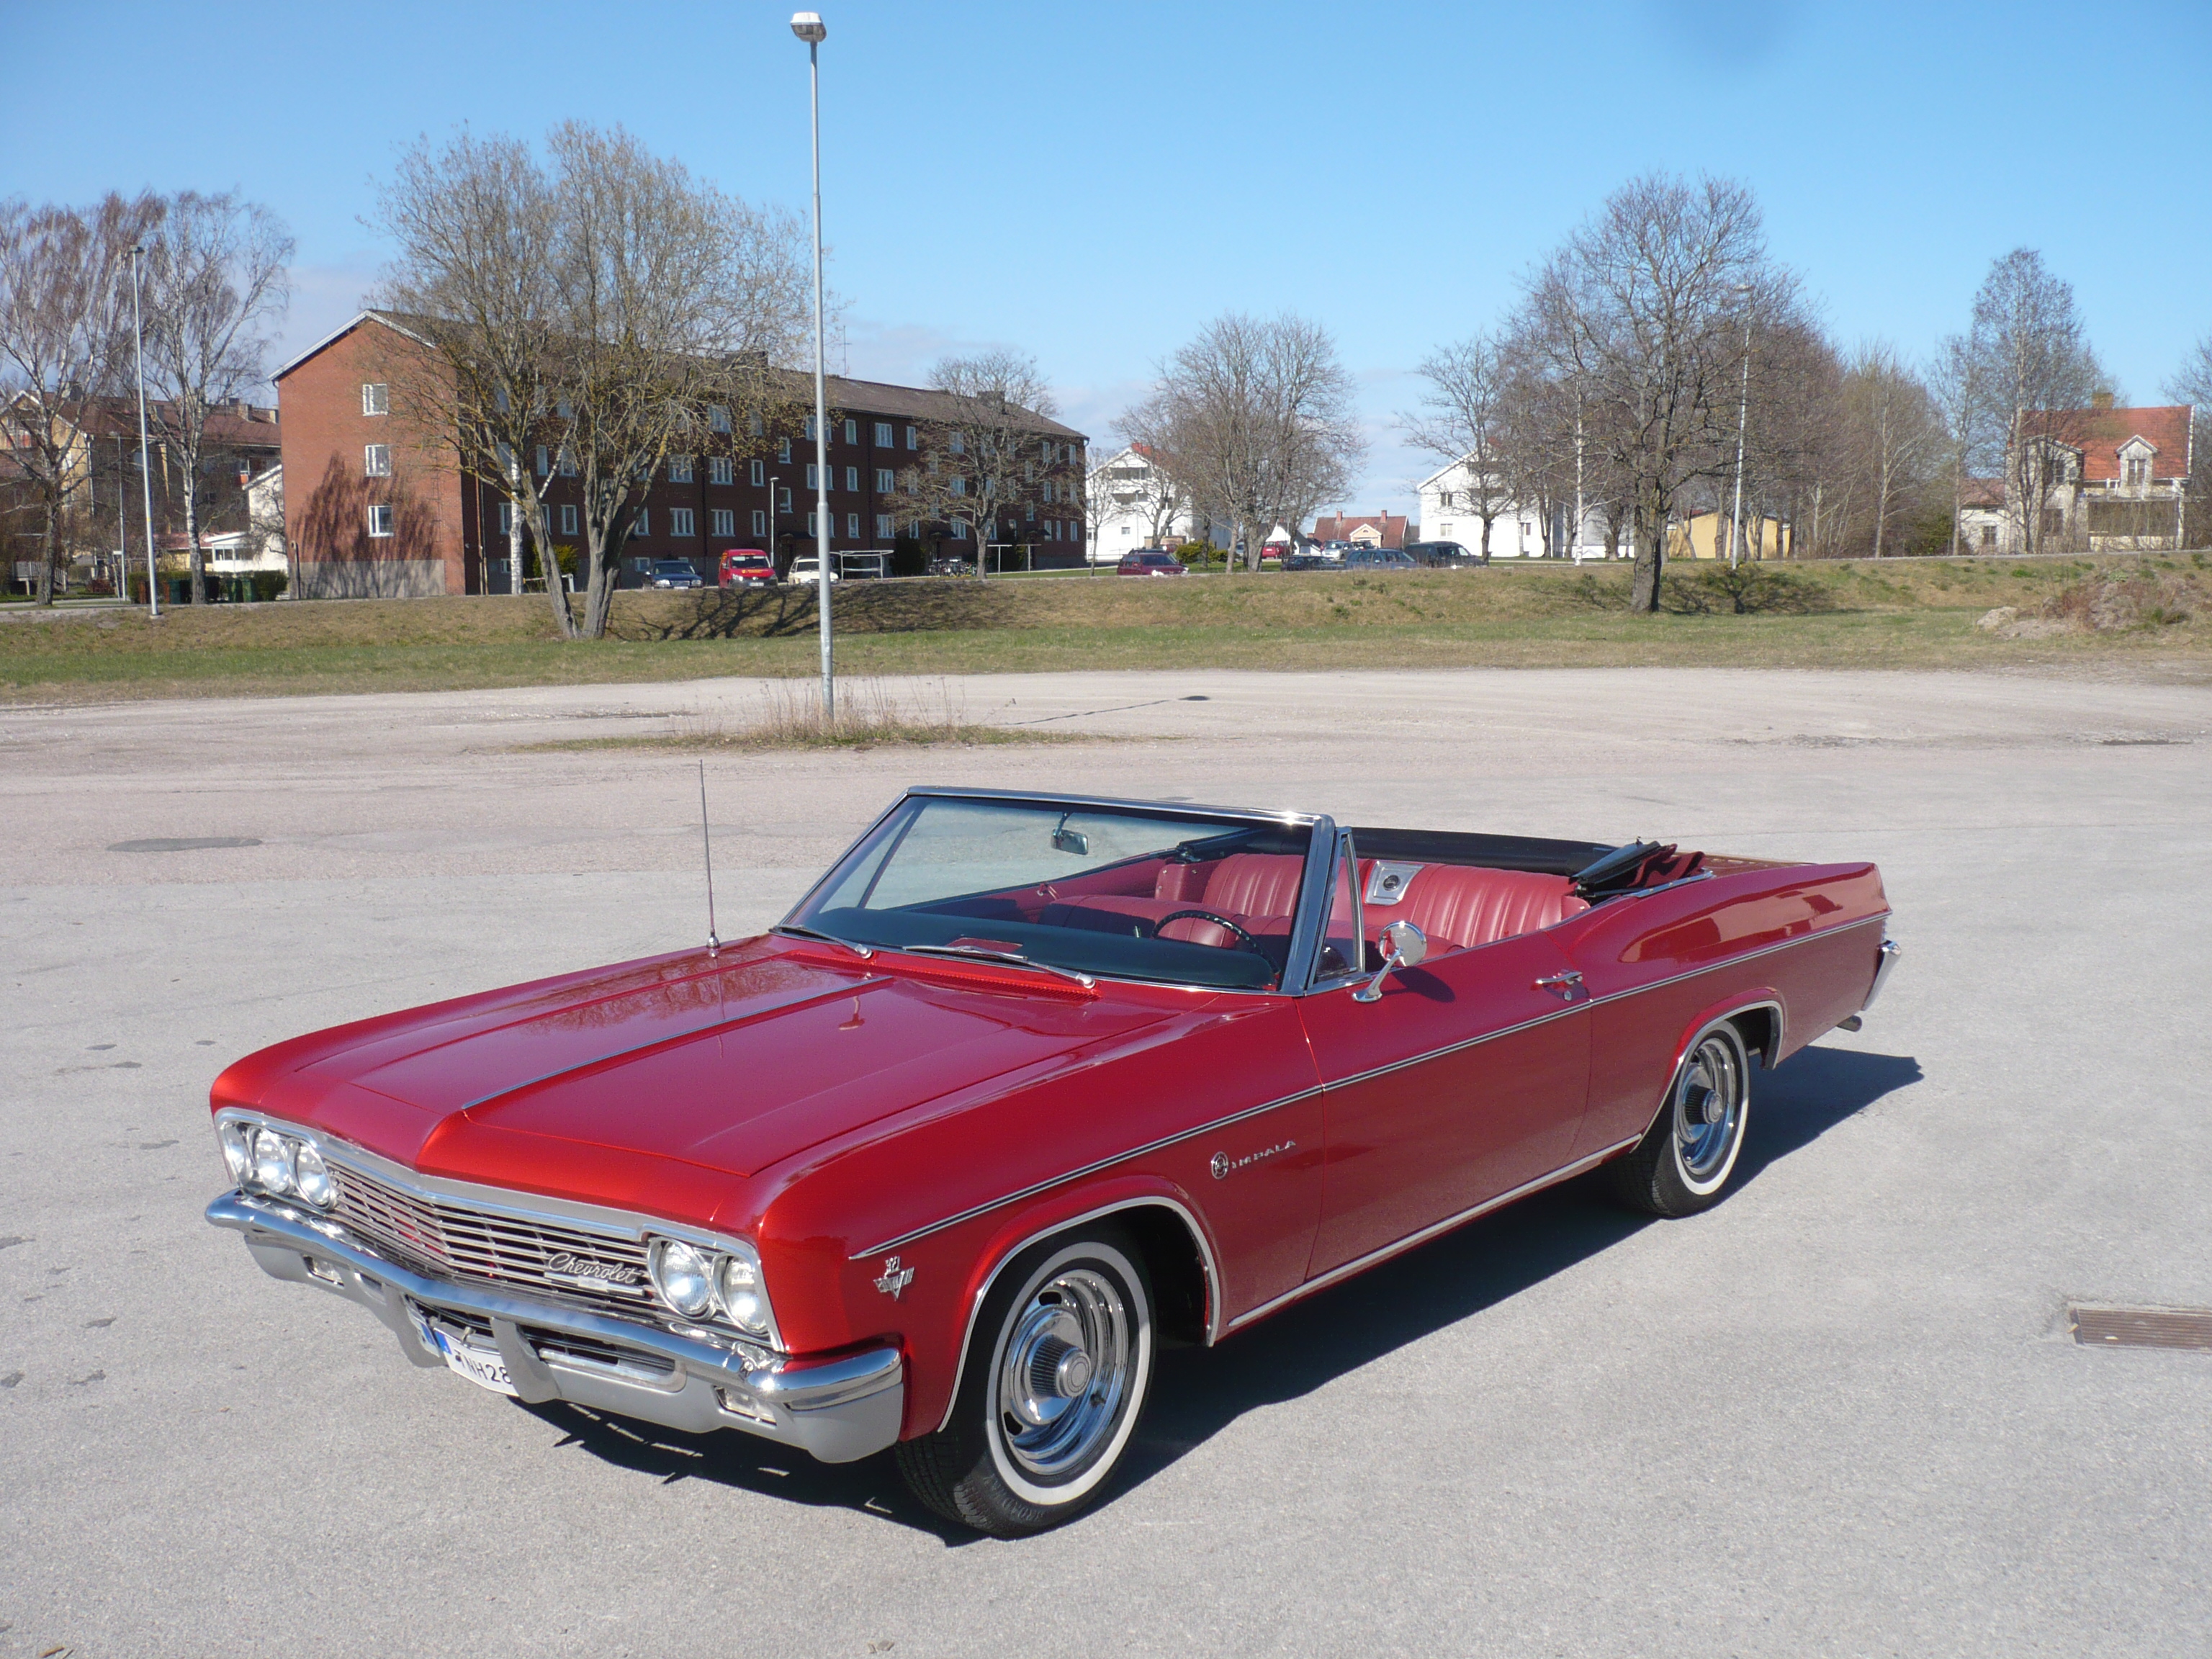 SÅLD!
Chevrolet Impala cab! Årsmodell 1966, Bilen är i super skick helrenoverad i Sverige! 327motor med PG låda.

Bilen är renoverad i Sverige under en längre tid, det mesta som går att köpa nytt är köpt nytt!